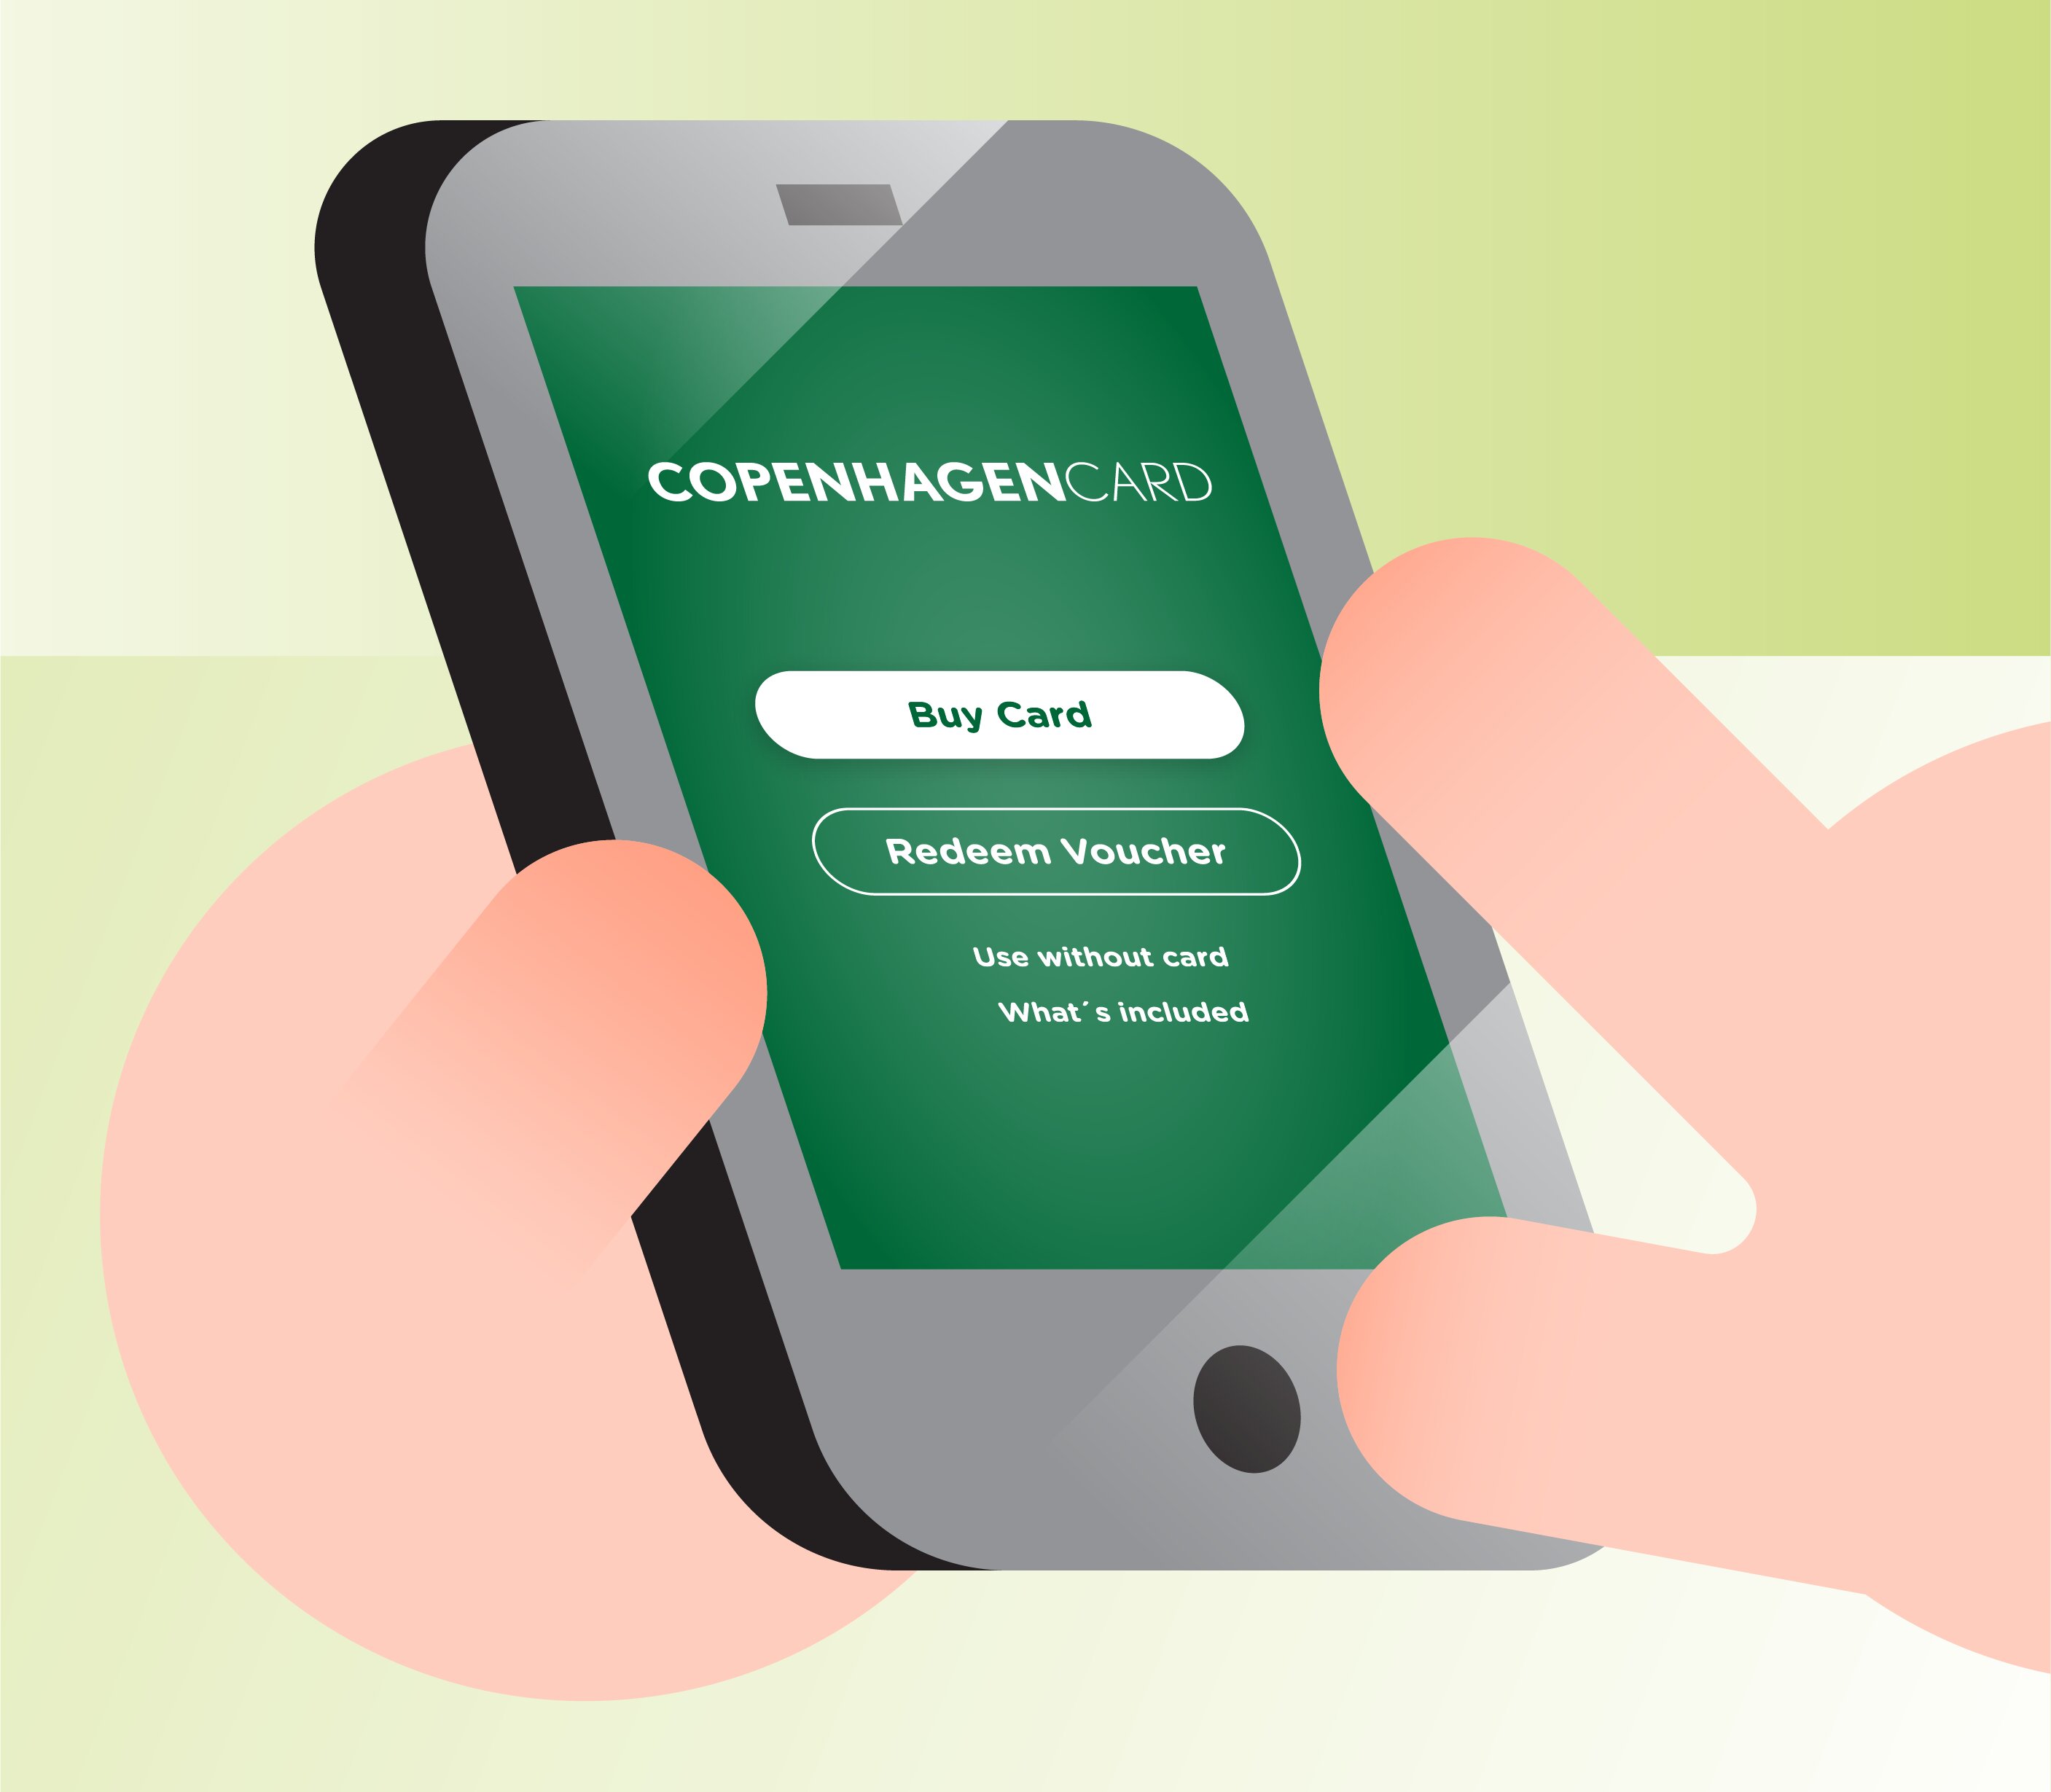 Buy and redeem Copenhagen Card in the app